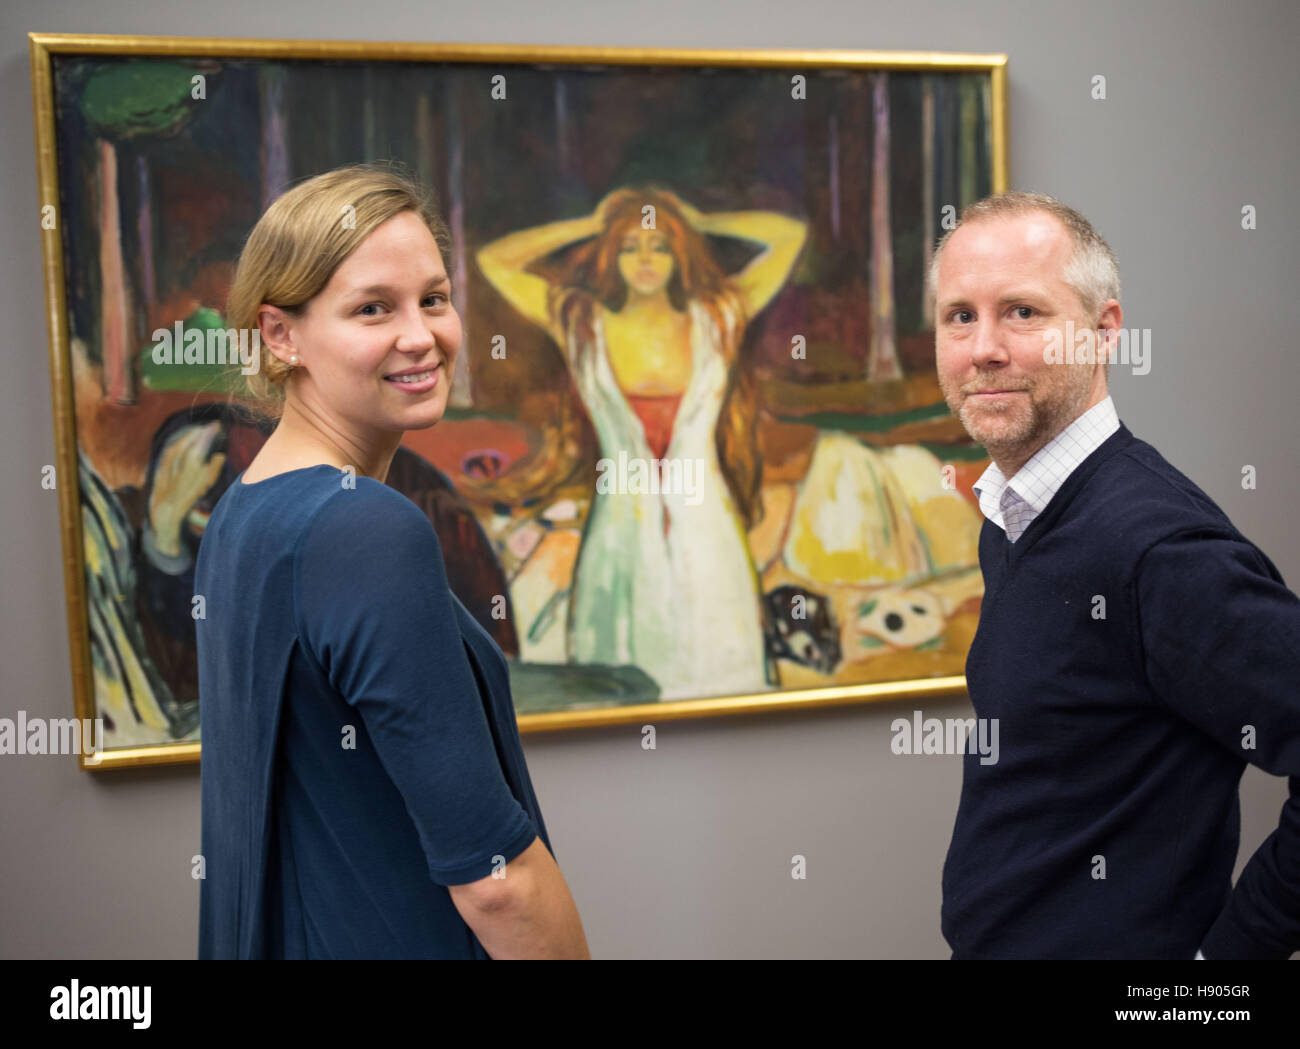 Die beiden Kuratoren Felicity Korn (l) und Felix Krämer (r) stehen am 17.11.2016 di Francoforte (Assia) im Städel Museum vor dem Bild 'Asche' des norwegischen Malers Edvard Munch, das eine Leihgabe des Munch musei in Oslo ist. Das Gemälde ist eines der zentralen Werke der Ausstellung ·Geschlechterkampf. Franz von Stuck bis Frida Kahlo·, die sich vom 24. Novembre 2016 bis zum 19. März 2017 der künstlerischen Auseinandersetzung mit Geschlechterrollen und -beziehungen von der Mitte des 19. Jahrhunderts bis zum Ende des Zweiten Weltkrieges widmet. Foto Stock